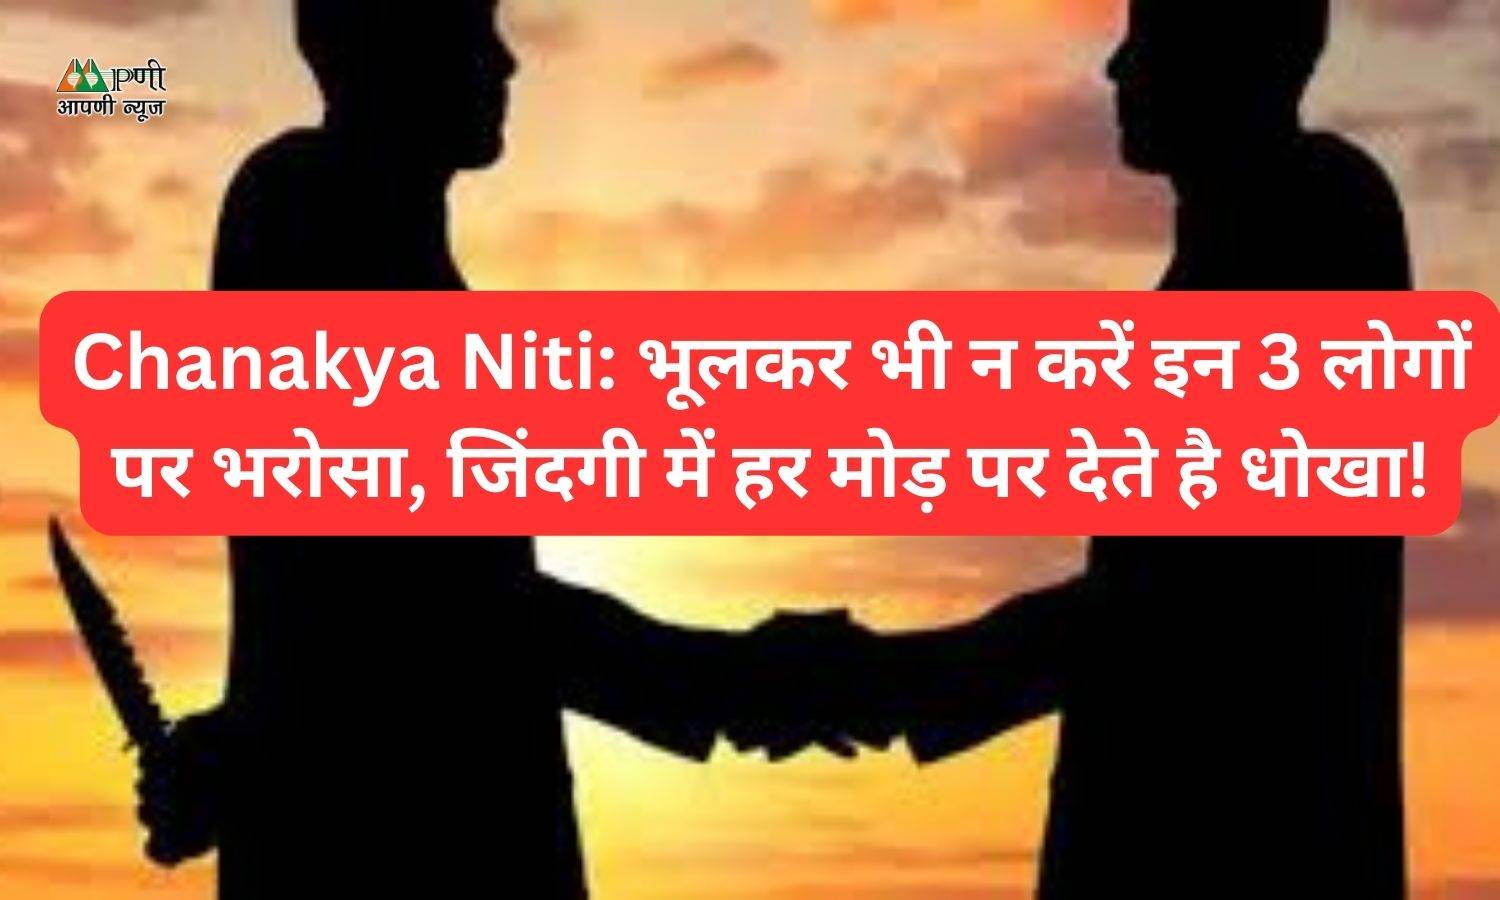 Chanakya Niti: भूलकर भी न करें इन 3 लोगों पर भरोसा, जिंदगी में हर मोड़ पर देते है धोखा!